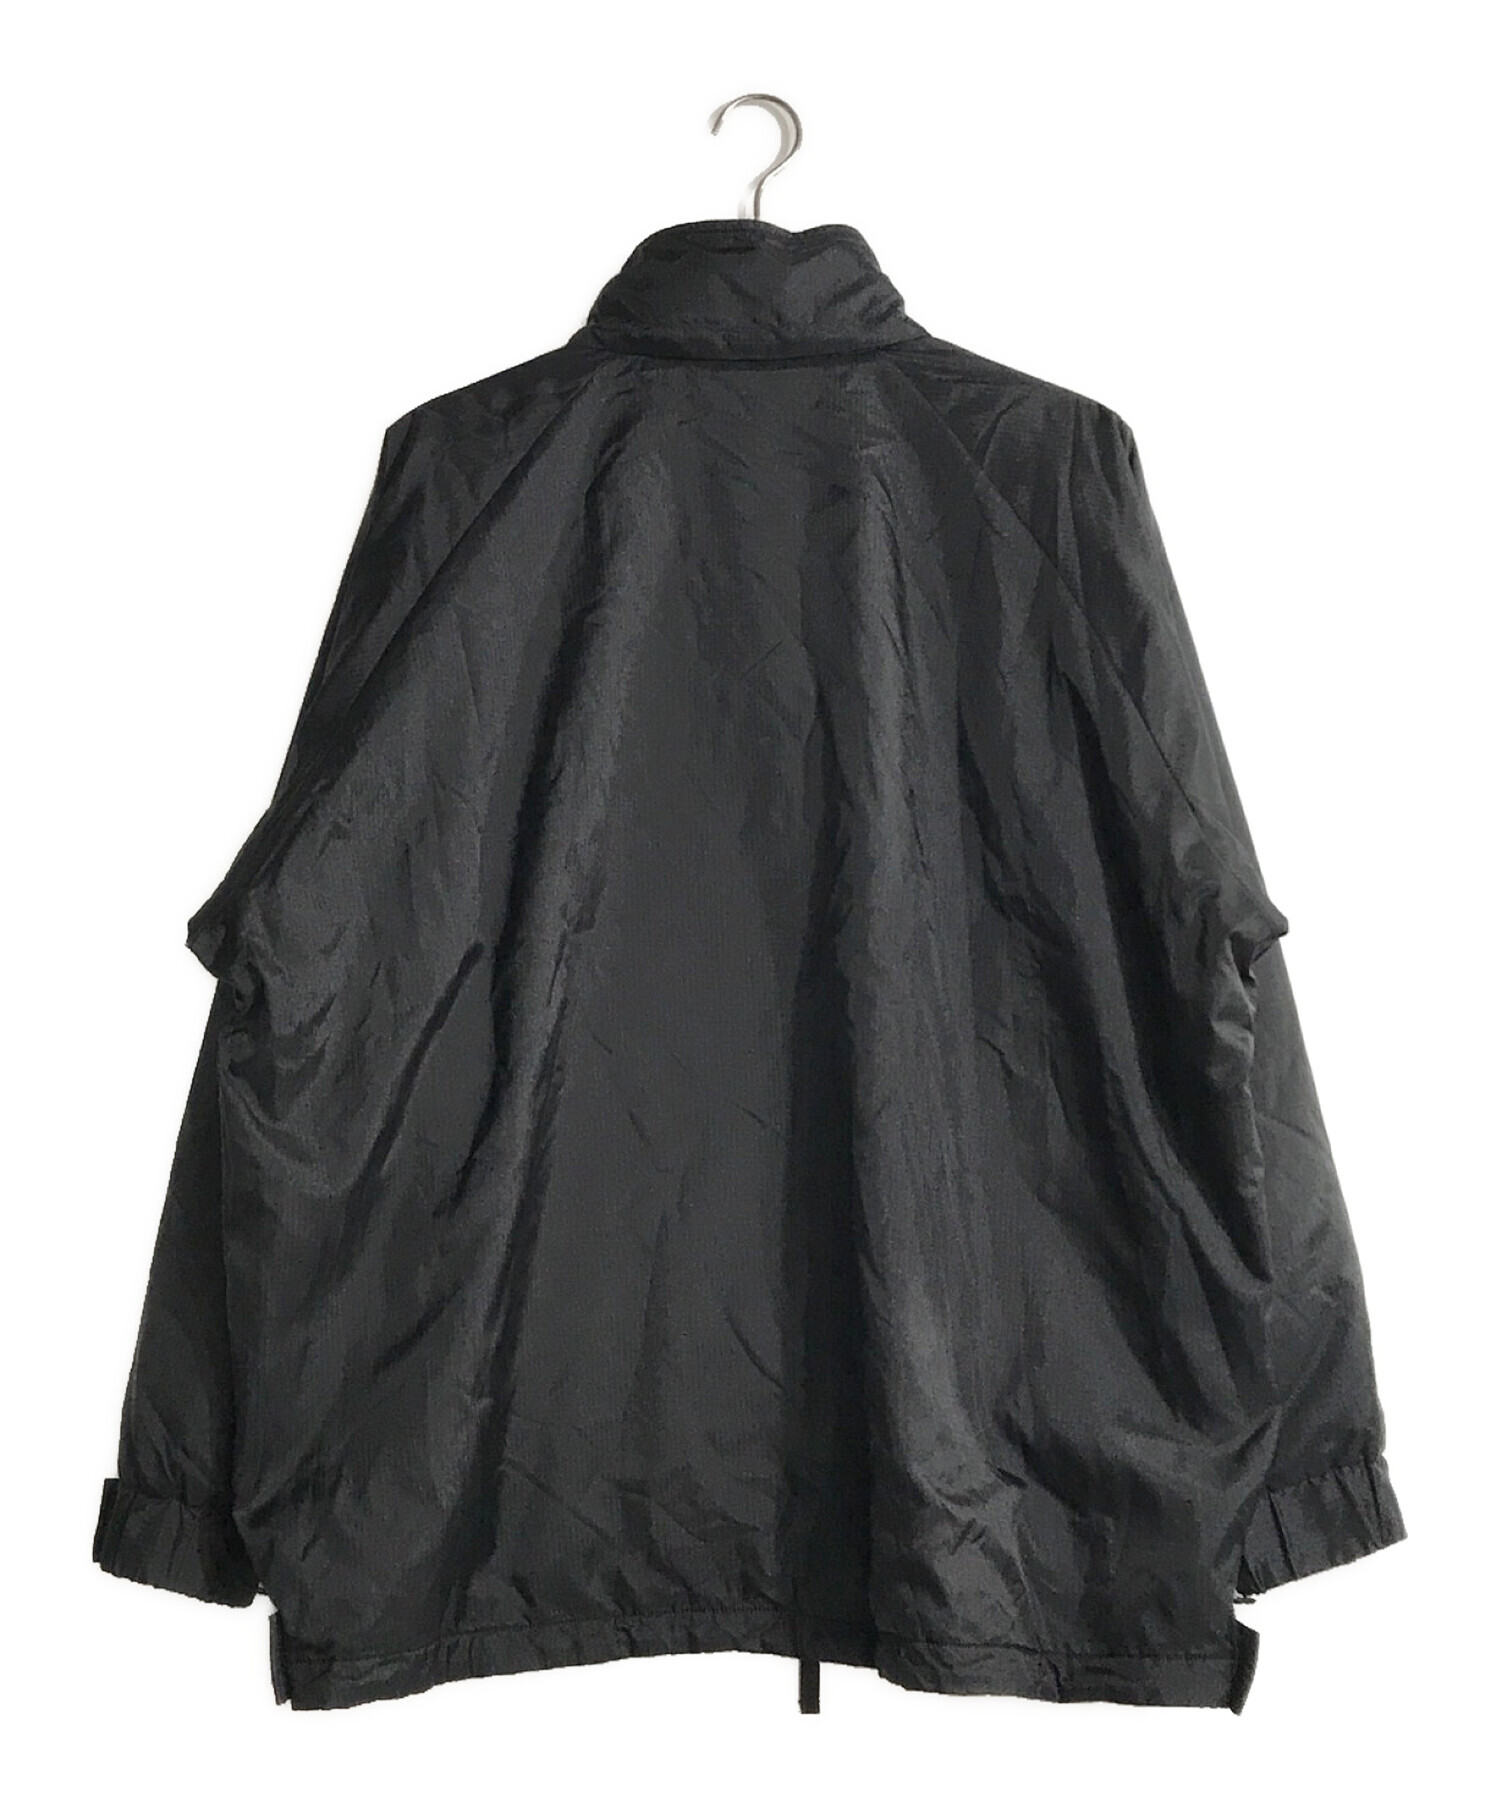 FreshService (フレッシュサービス) サーマルスモックジャケット ブラック サイズ:L